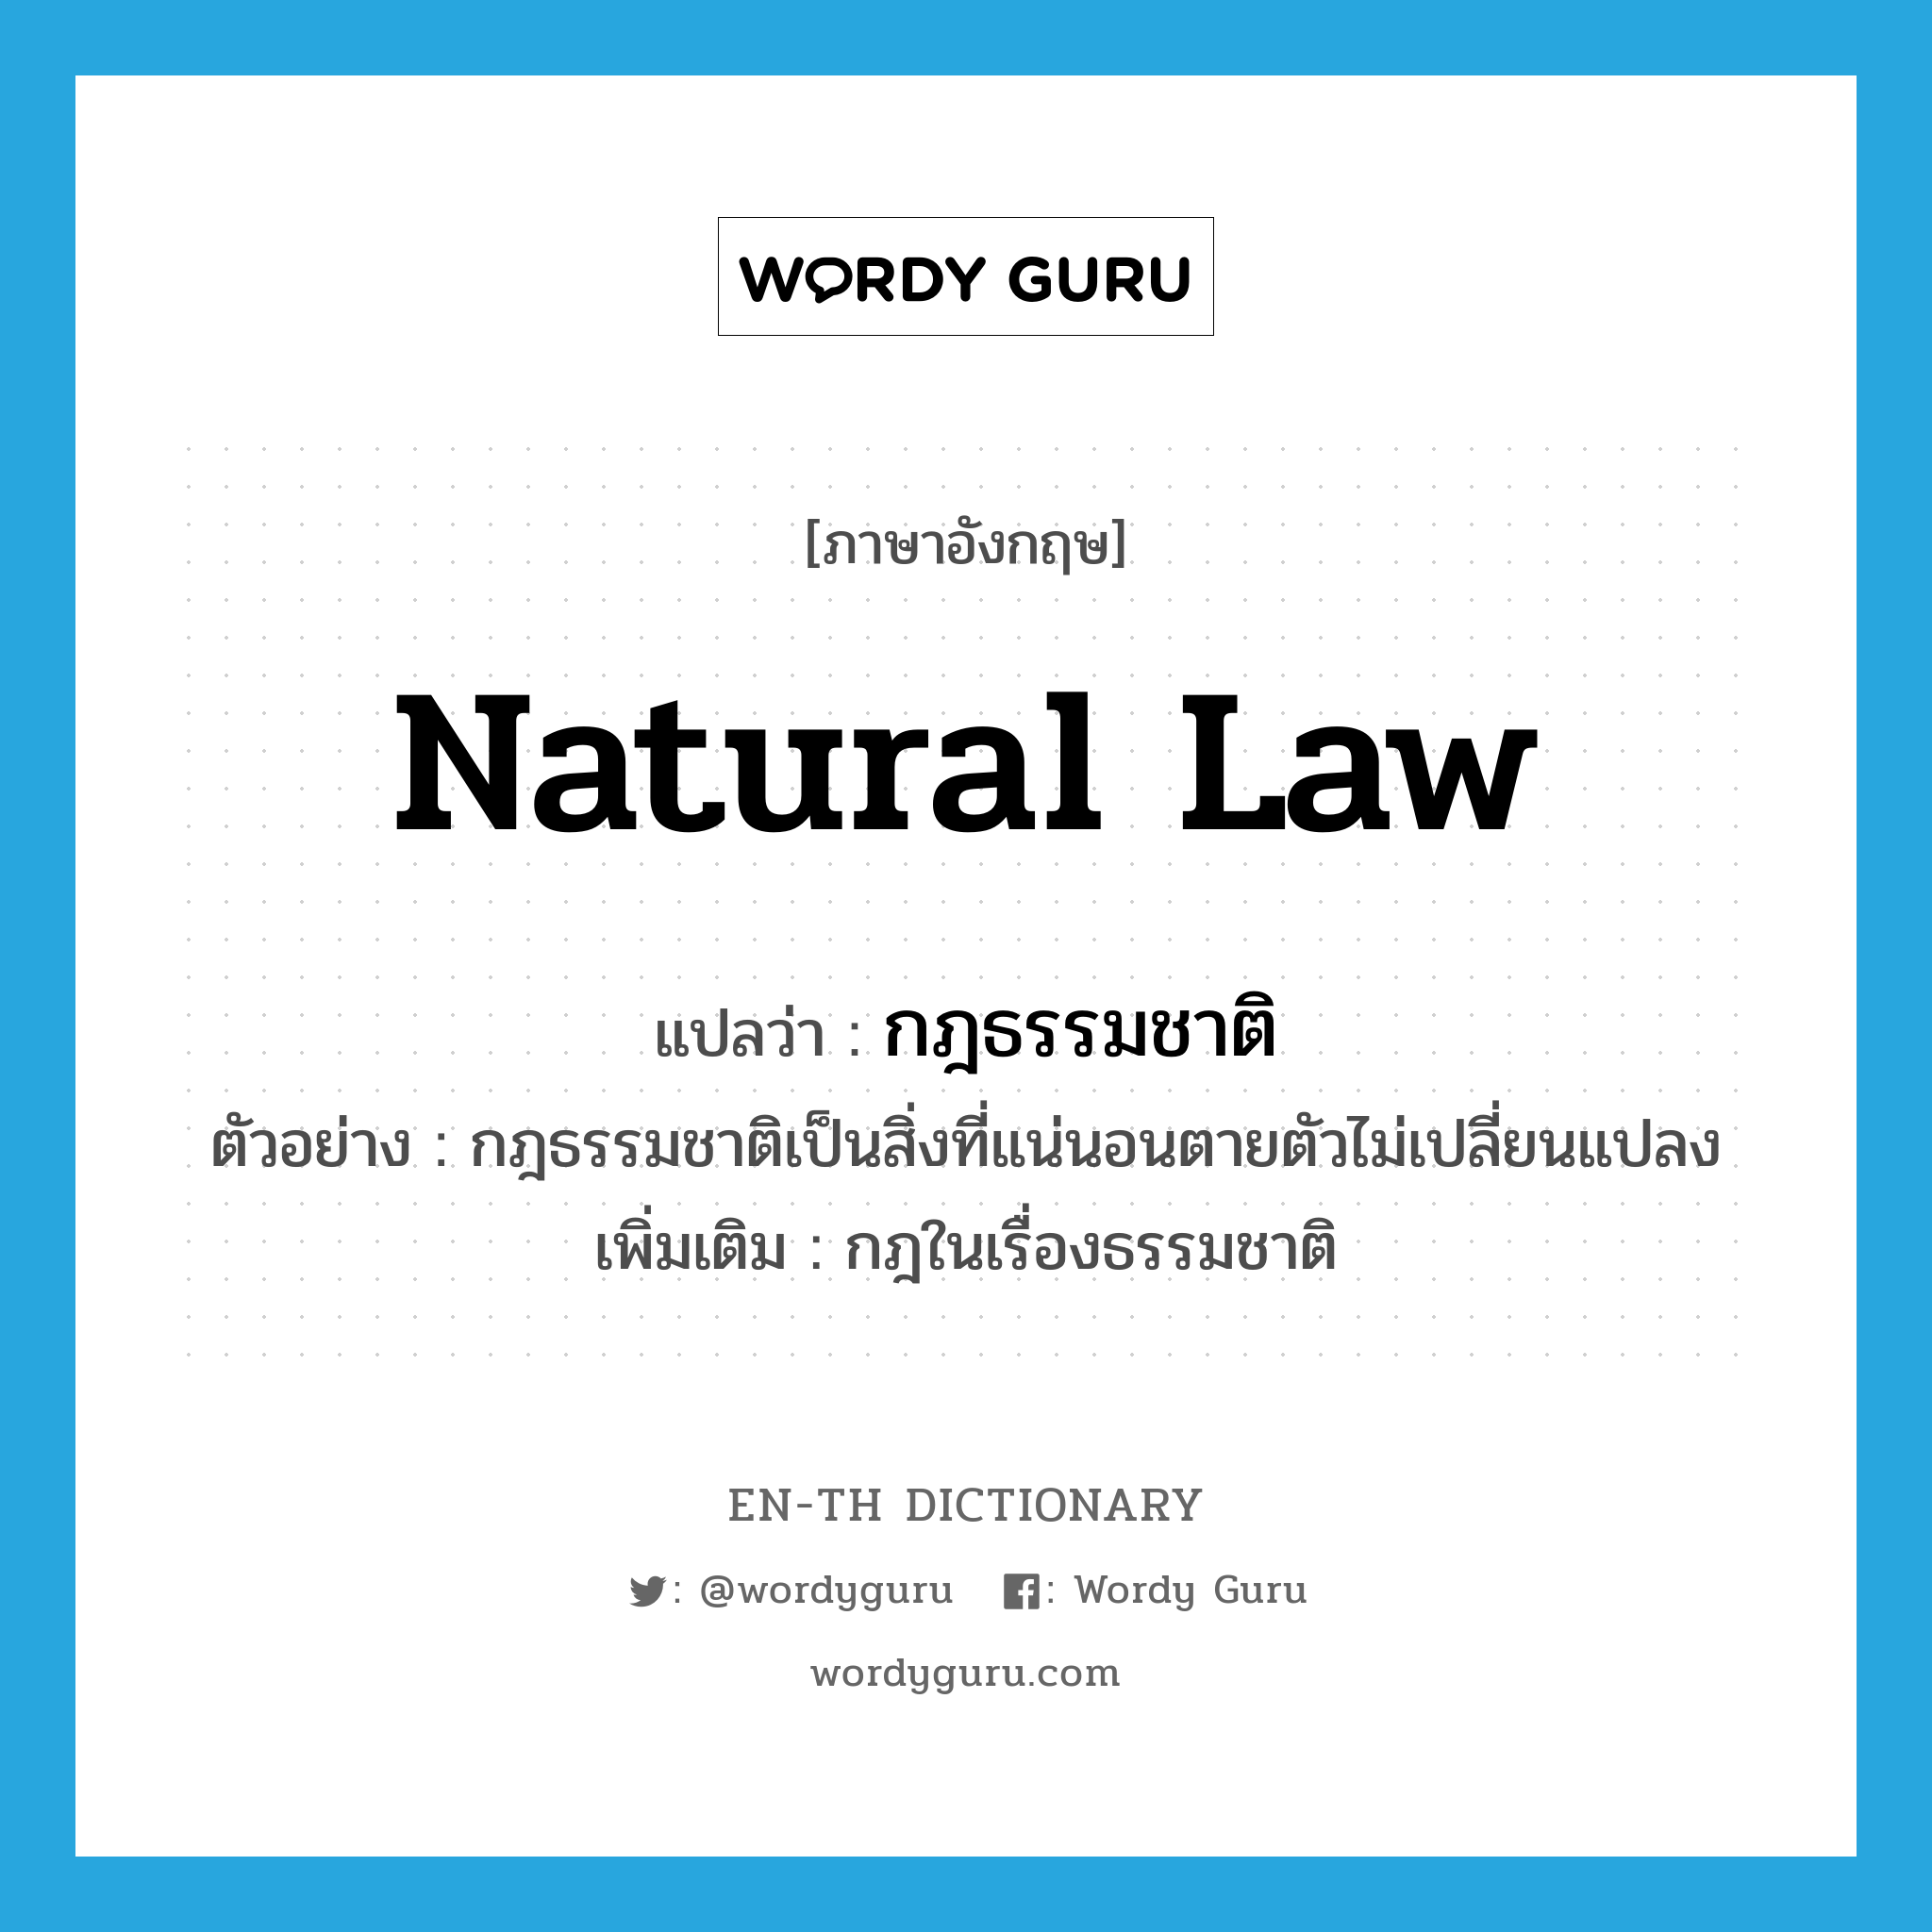 กฎธรรมชาติ ภาษาอังกฤษ?, คำศัพท์ภาษาอังกฤษ กฎธรรมชาติ แปลว่า natural law ประเภท N ตัวอย่าง กฎธรรมชาติเป็นสิ่งที่แน่นอนตายตัวไม่เปลี่ยนแปลง เพิ่มเติม กฎในเรื่องธรรมชาติ หมวด N